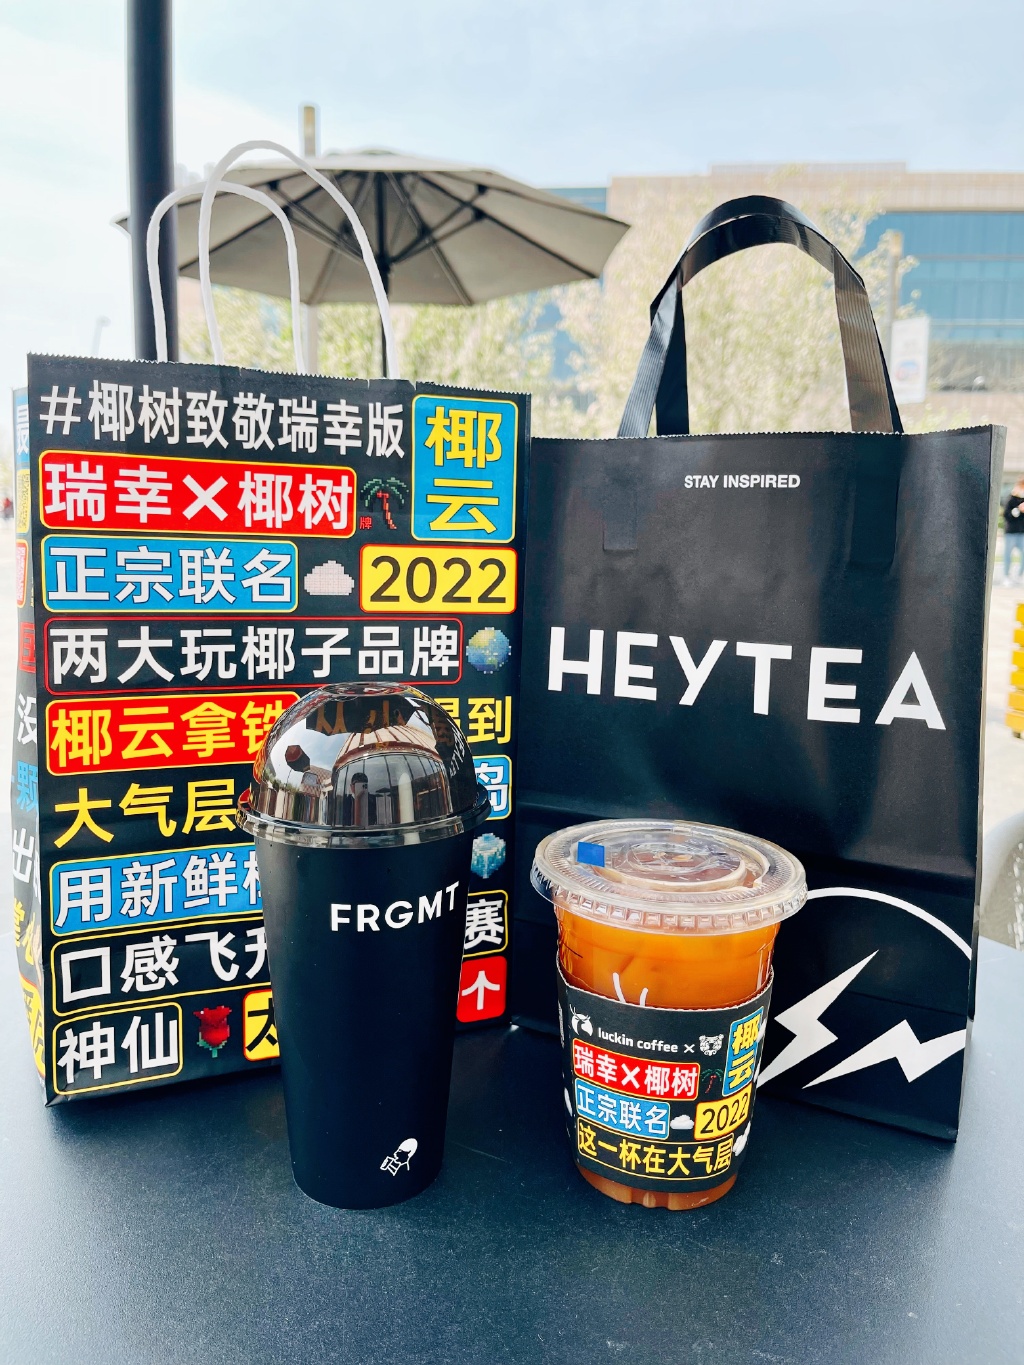 网友磊磊GoldenLei在微博晒出两款热门联名茶饮.jpg